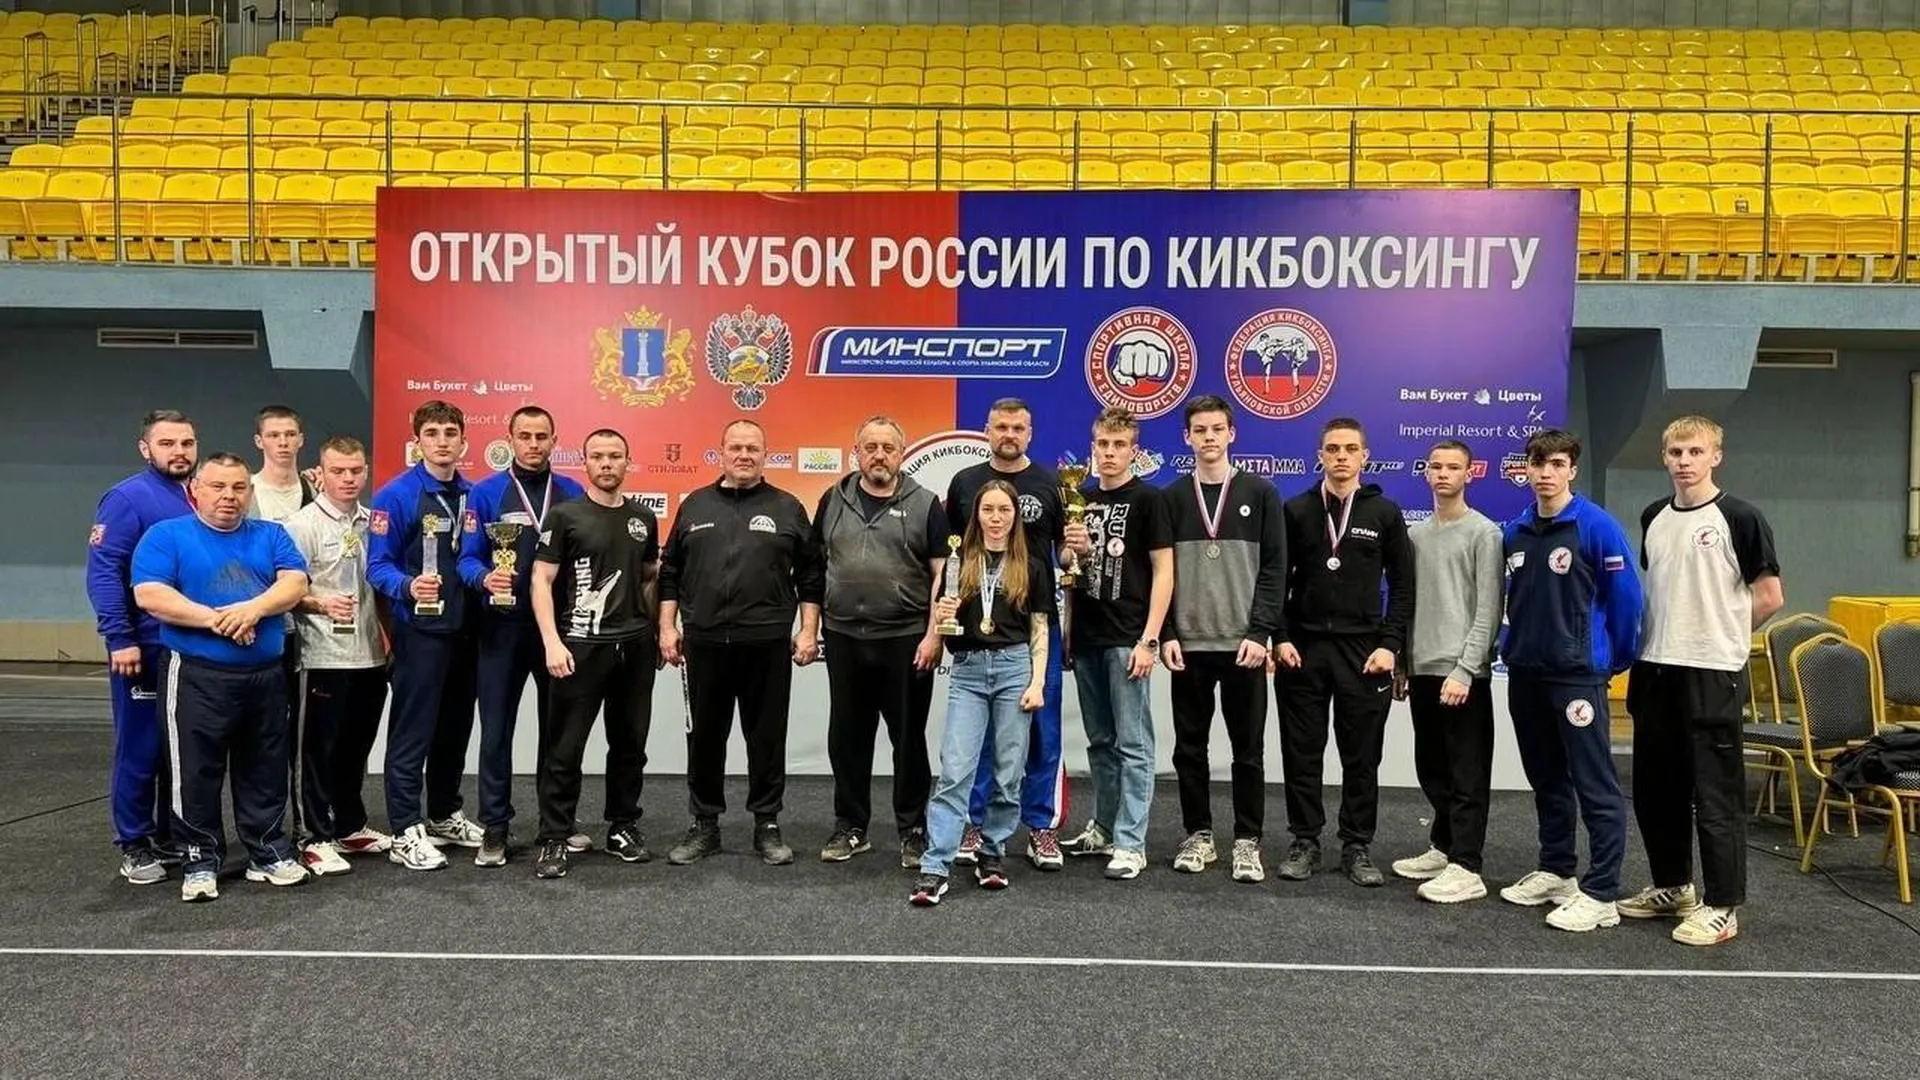 Сборная Подмосковья получила 21 медаль на Кубке России и всероссийских соревнованиях по кикбоксингу